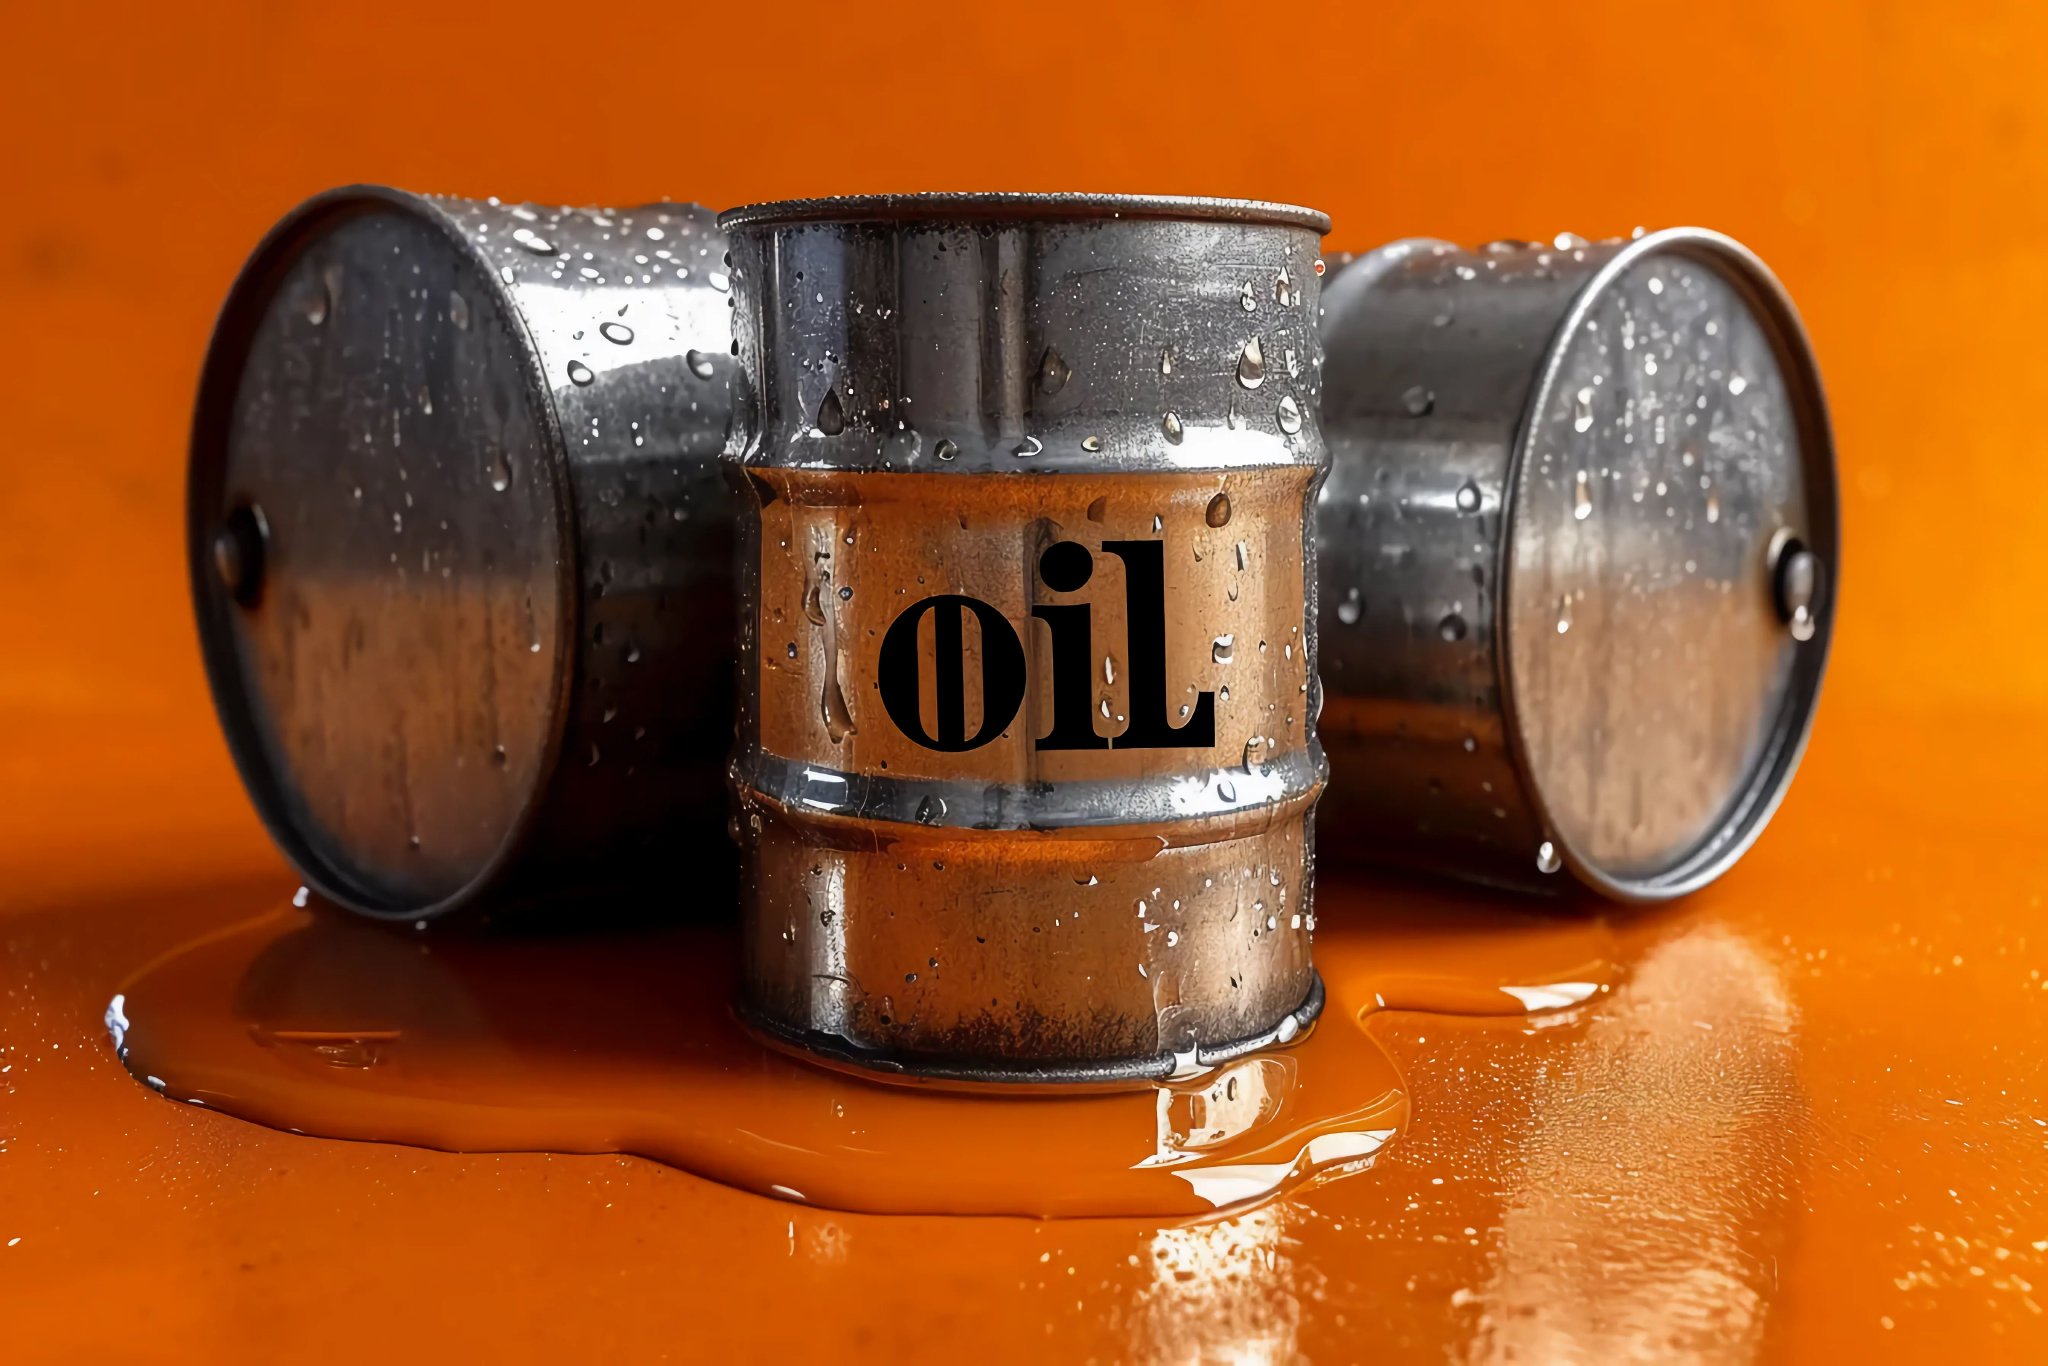 去年五大国际石油巨头少挣700多亿美元